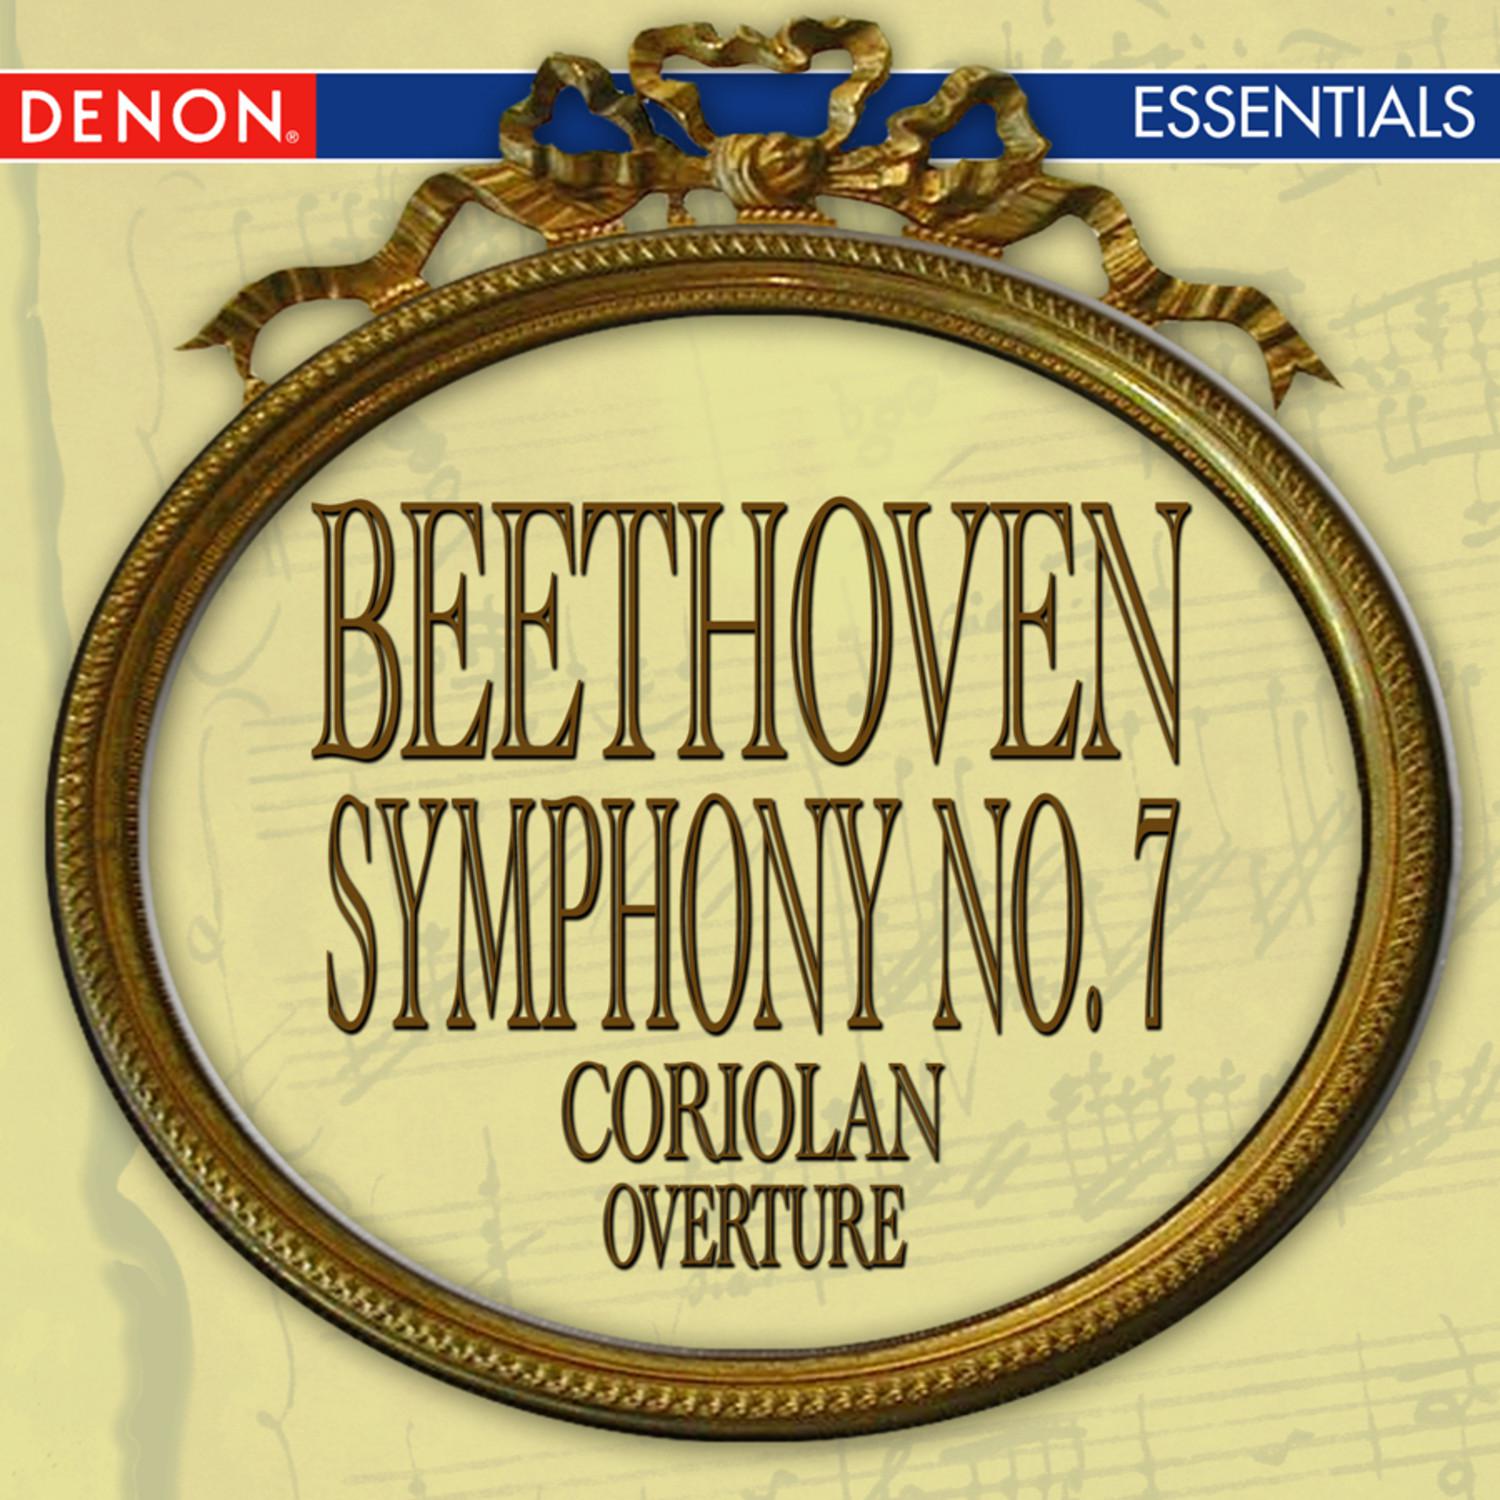 Coriolan Overture in E Minor, Op. 62